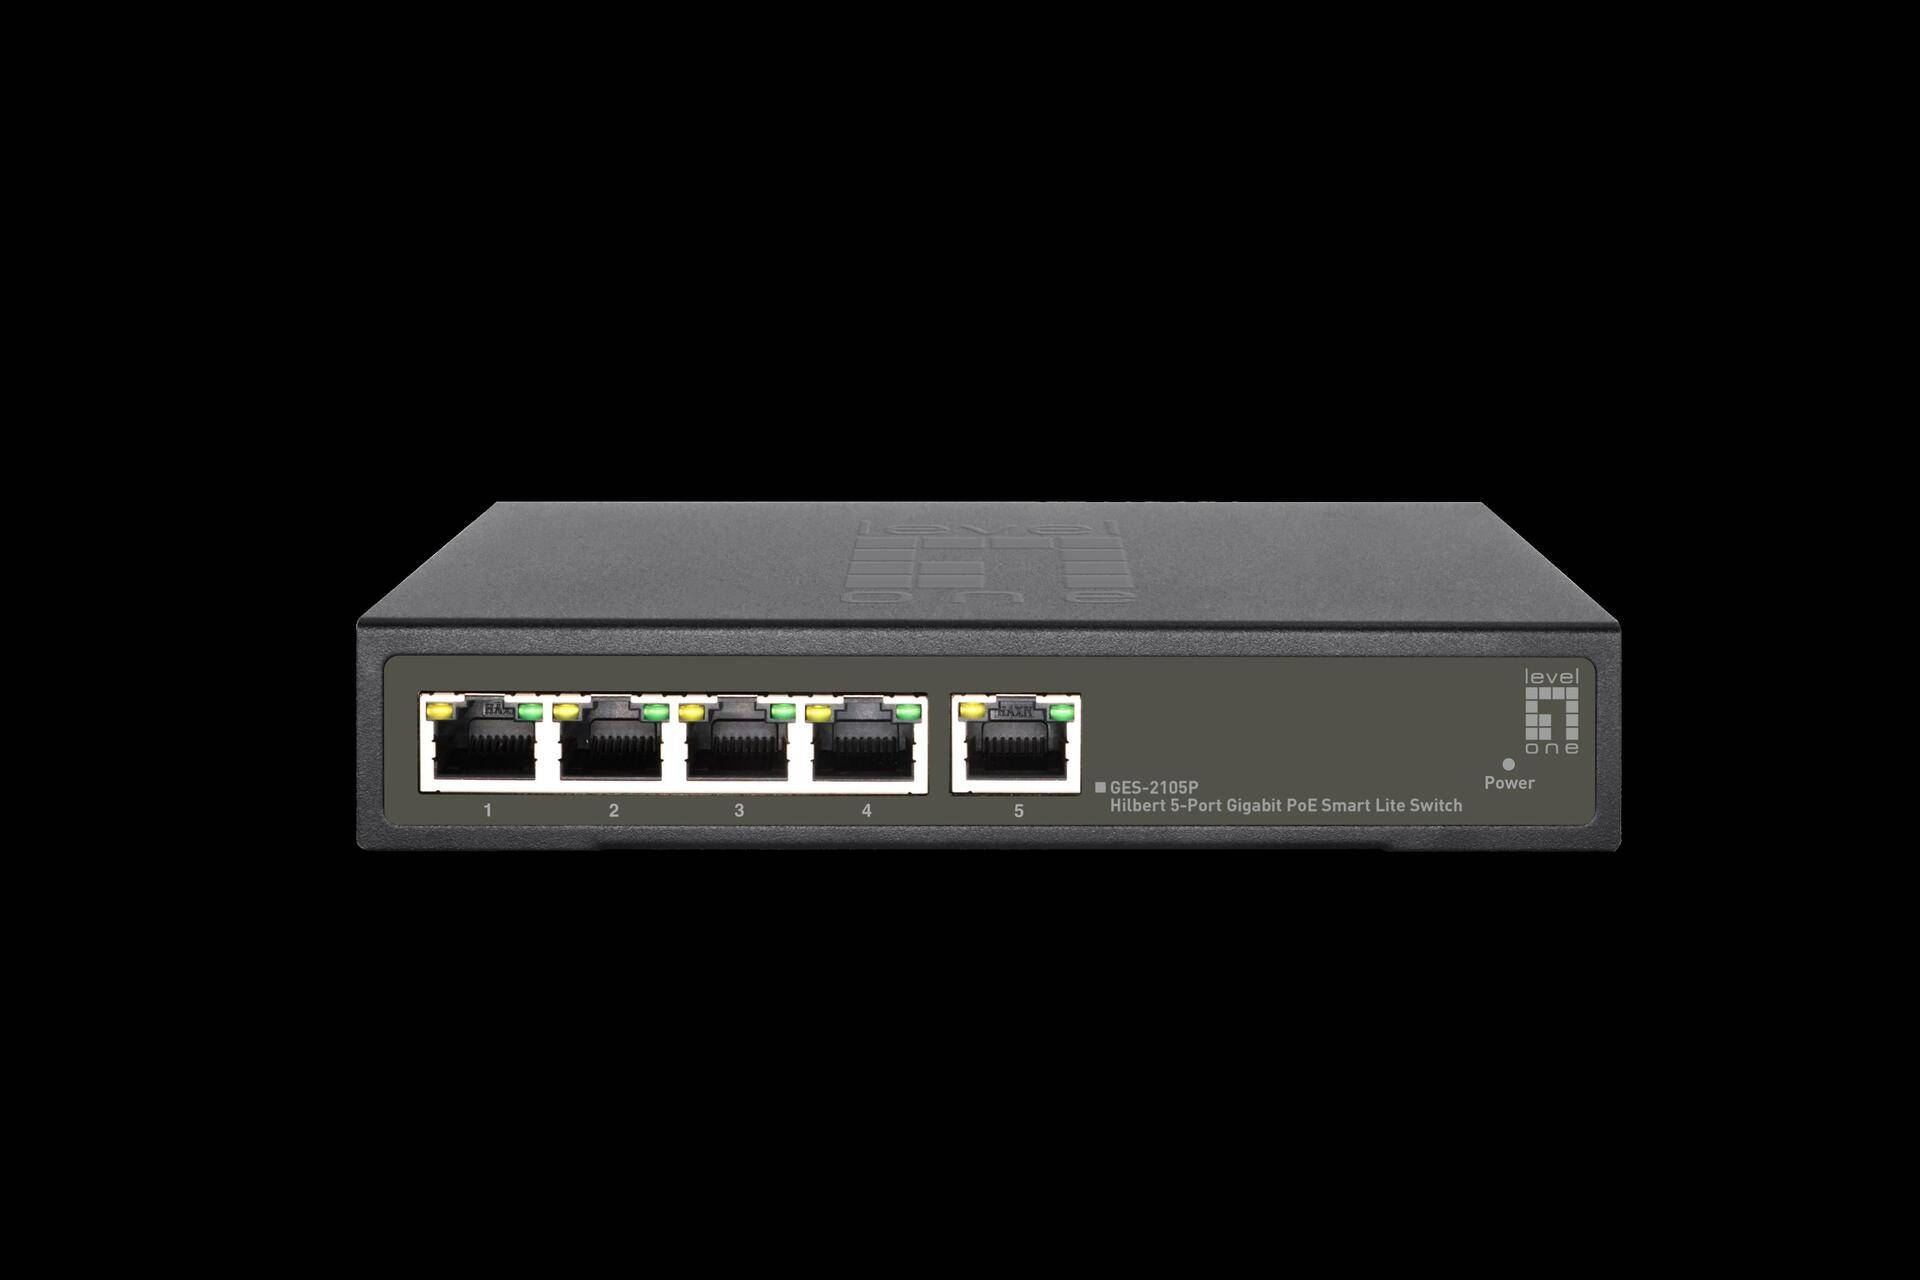 LevelOne Hilbert 5-Port Gigabit PoE Smart Lite Switch - 802.3at/af PoE - 4 PoE Ausgänge - 60W PoE-Leistungsbudget (GES-2105P) von LevelOne